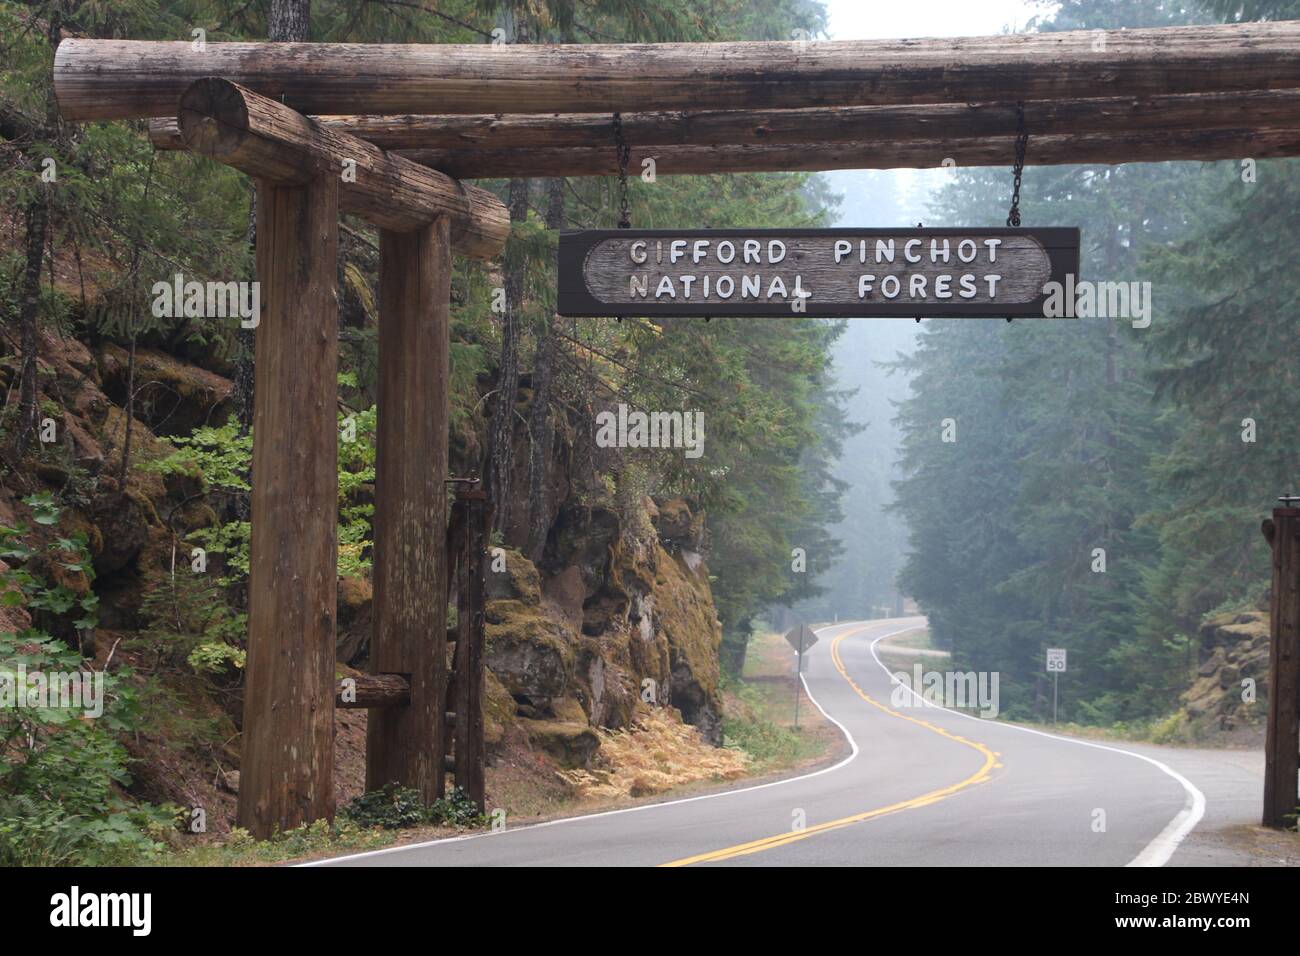 Nella foto è raffigurato l'ingresso alla Gifford Pinchot National Forest negli Stati Uniti. Foto Stock